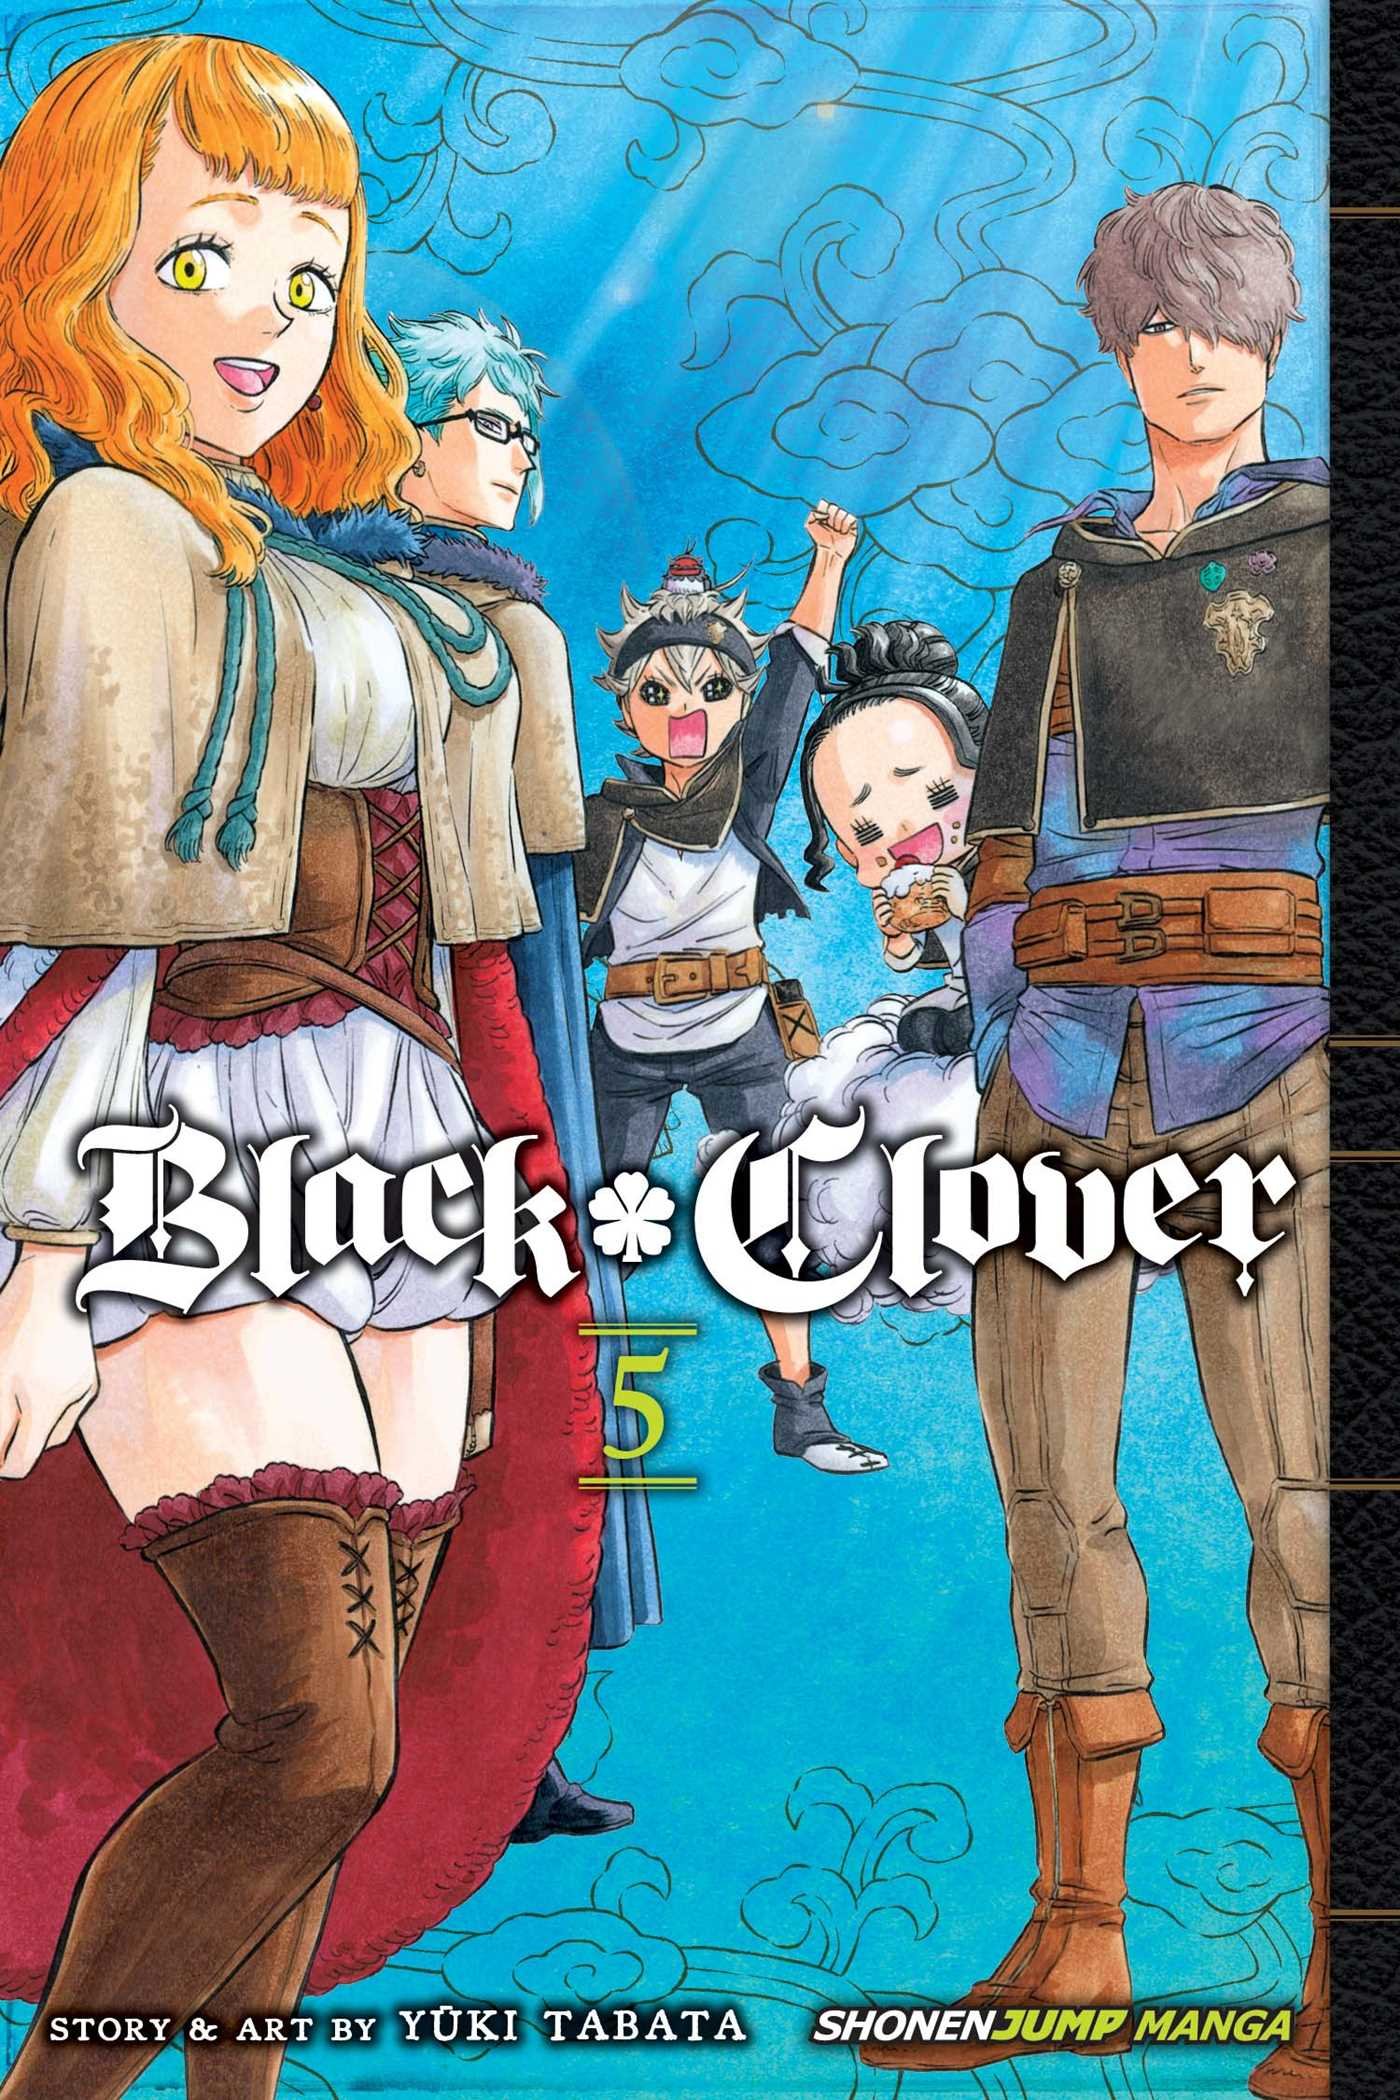 Black Clover - Volume 5